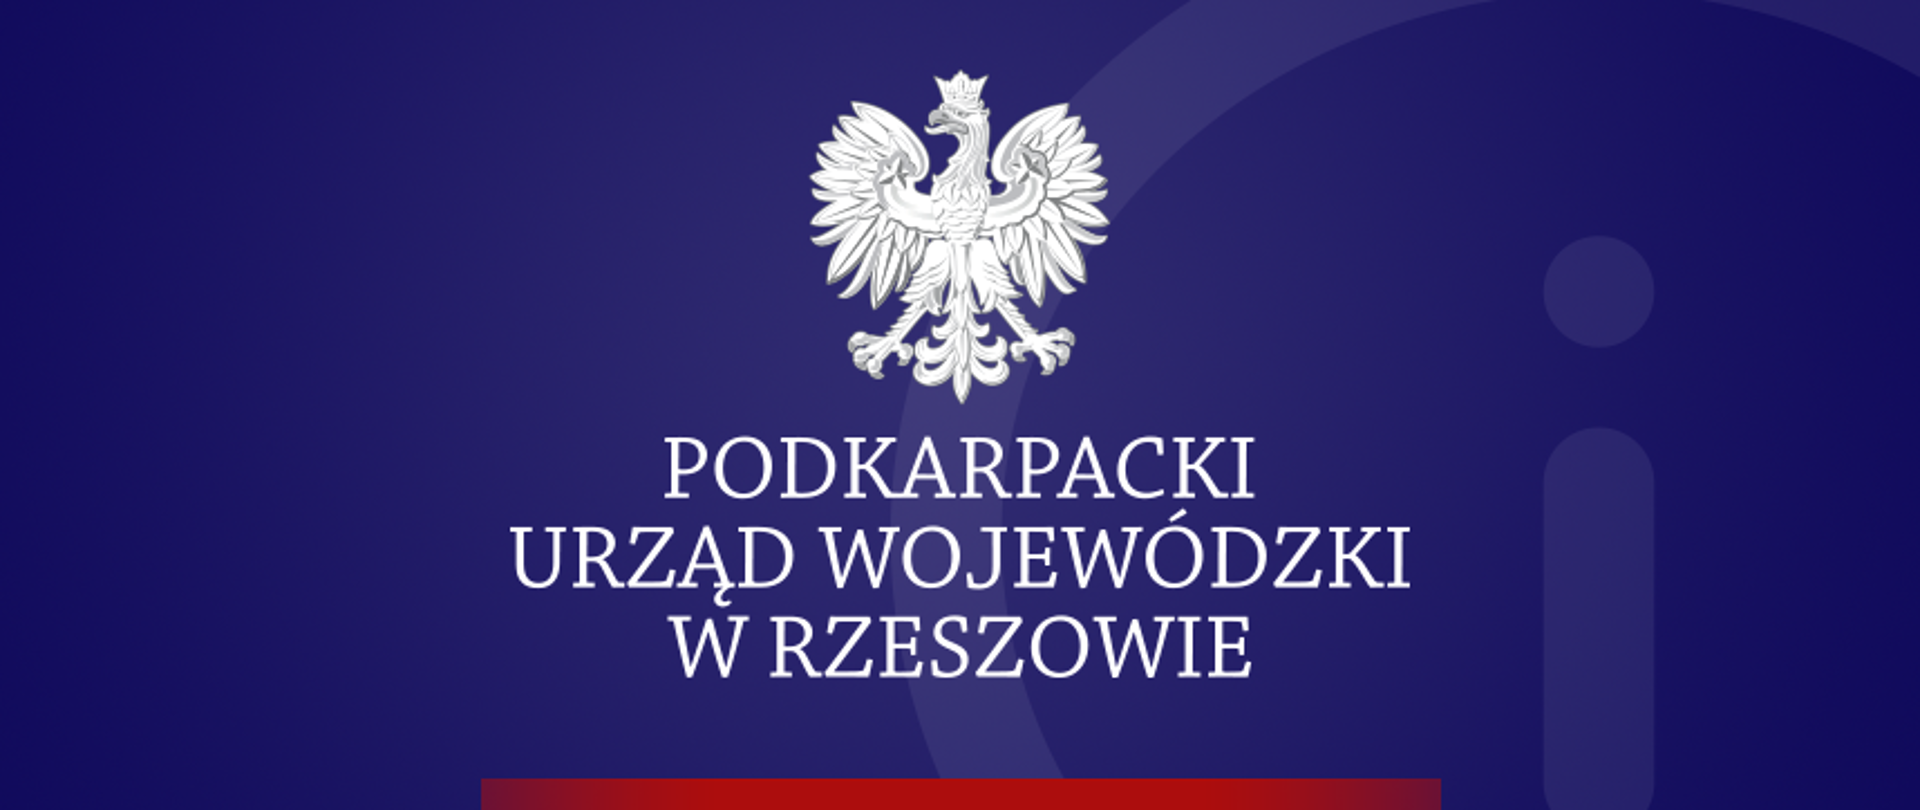 komunikat Podkarpackiego Urzędu Wojewódzkiego w Rzeszowie